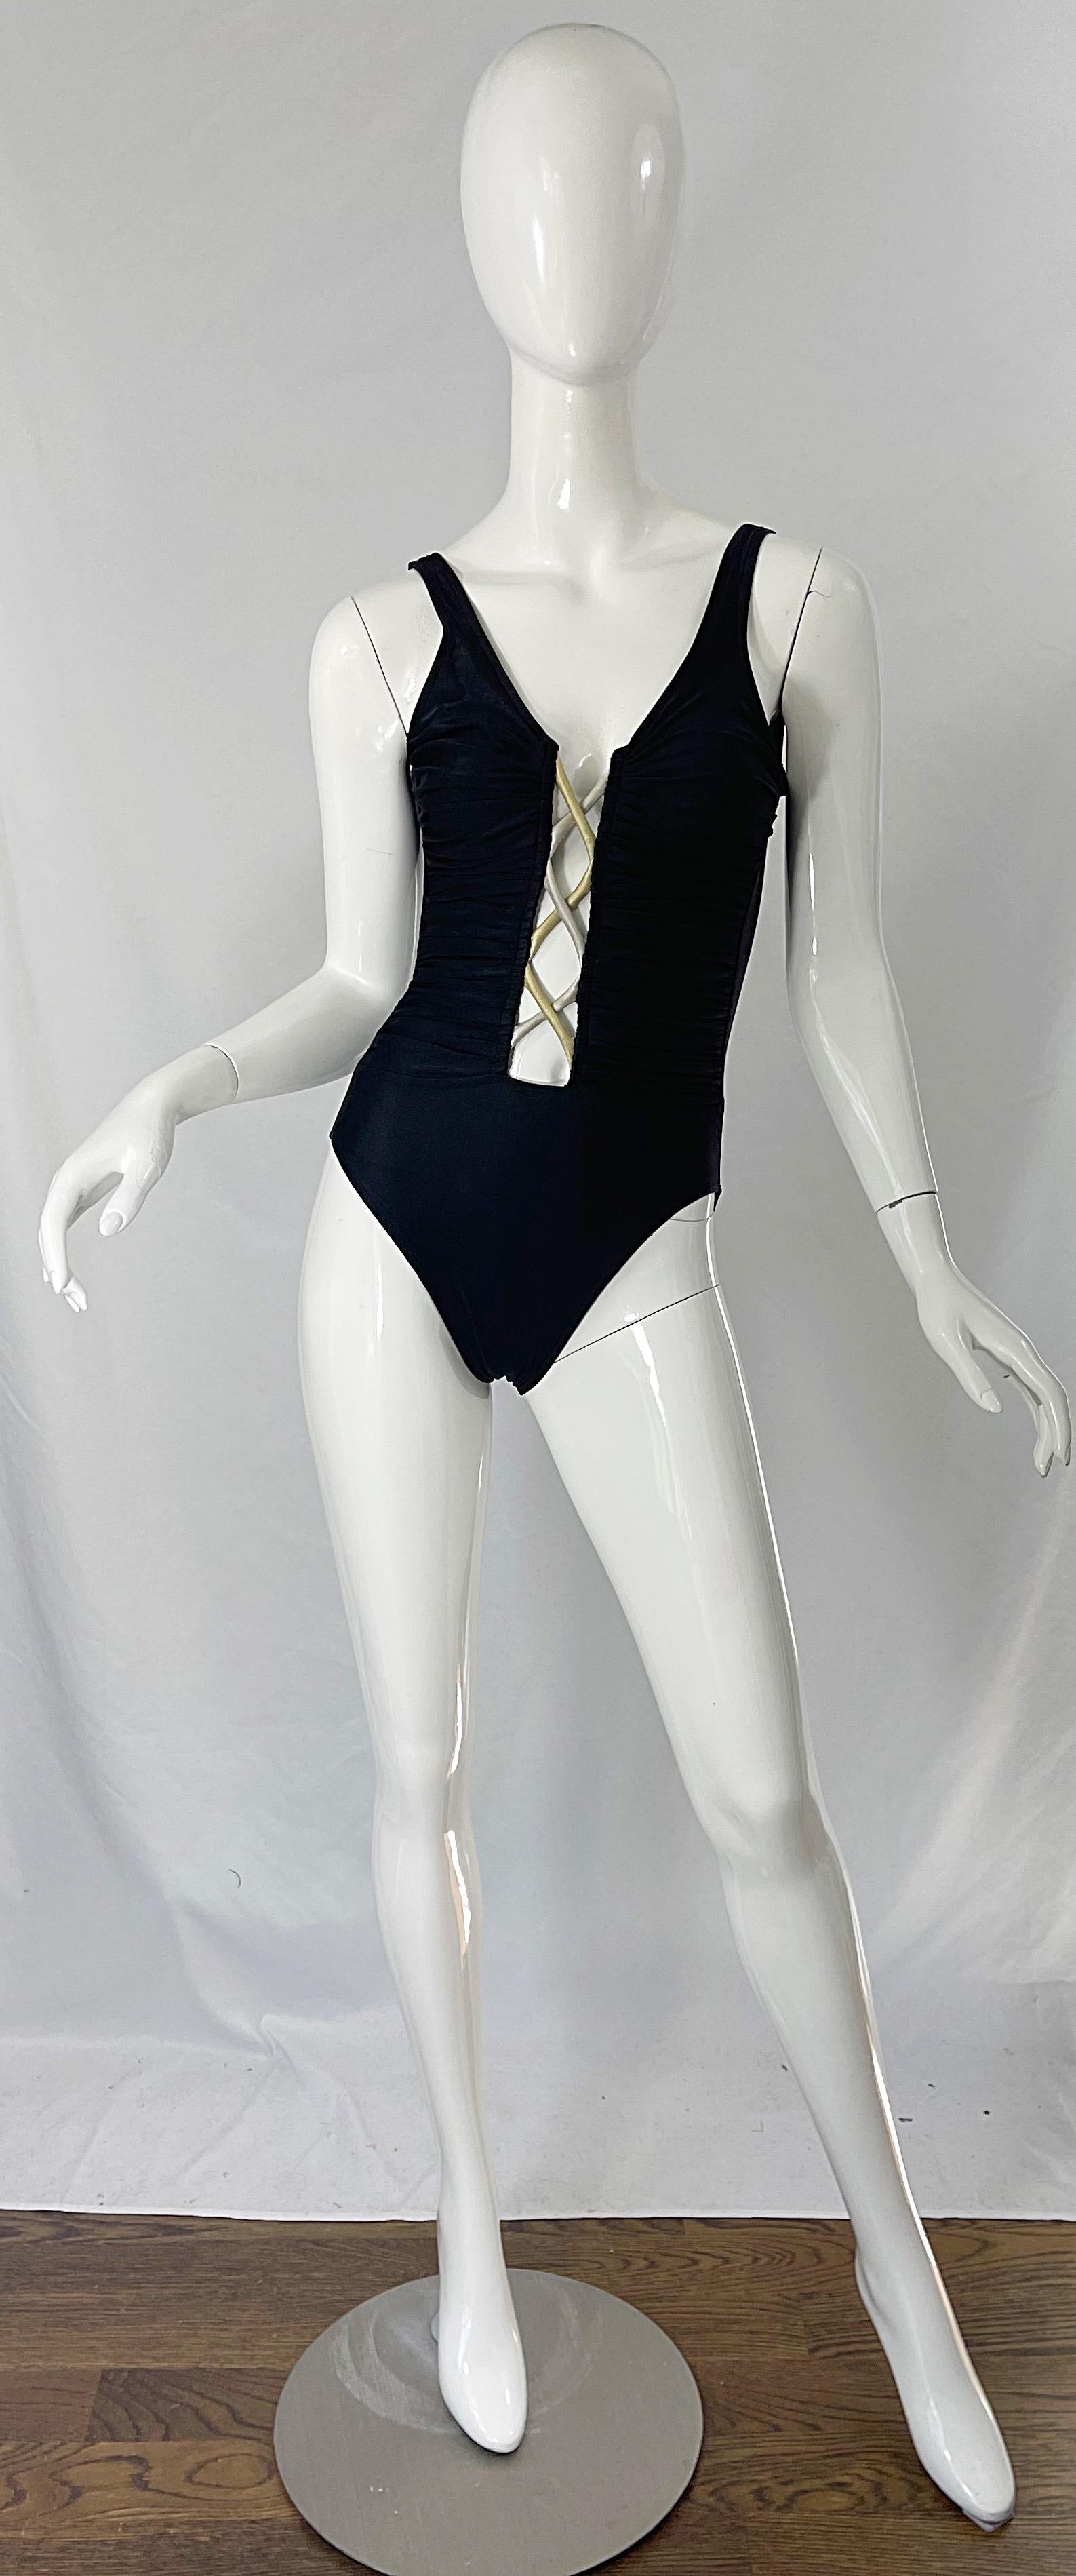 Sexy frühen 90er BILL BLASS ein Stück griechischen Stil Badeanzug oder Bodysuit ! Mit einem gold- und silberfarbenen Seilausschnitt (eine Seite hellgold, die andere silberfarben) in der vorderen Mitte. Gibt genau die richtige Menge an Haut frei.